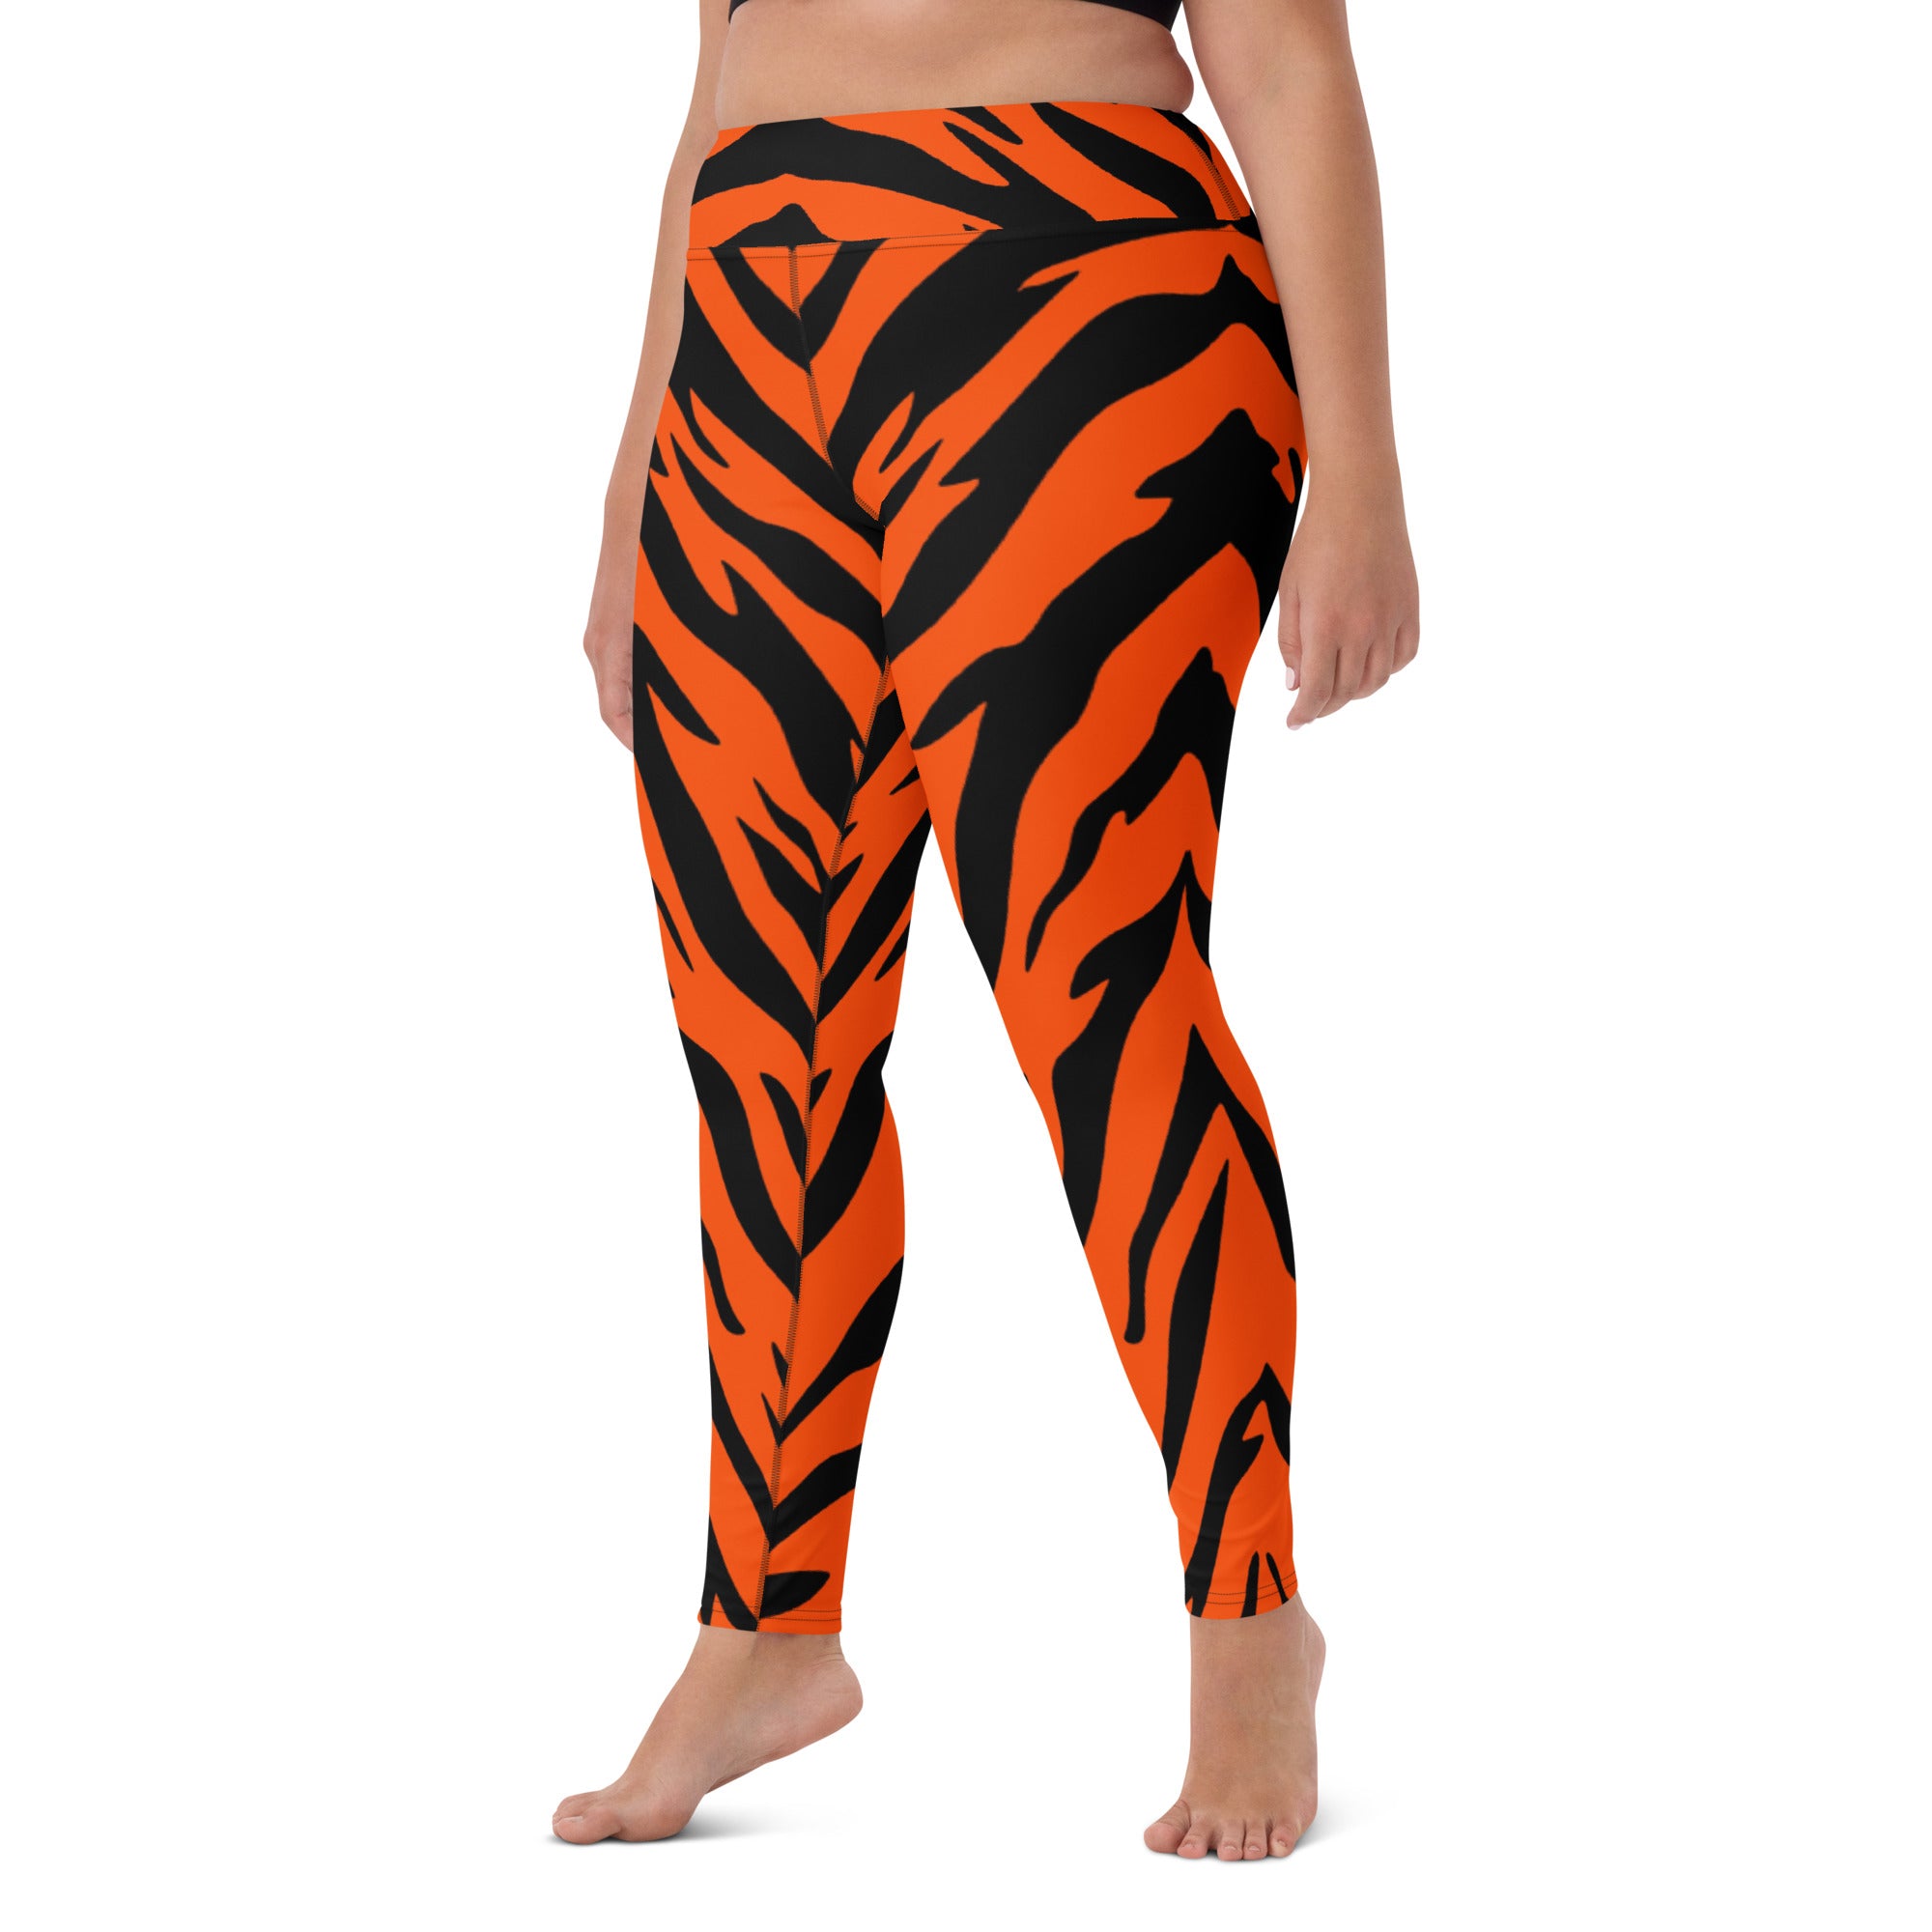 Bengal Tiger Stripe Yoga Leggings